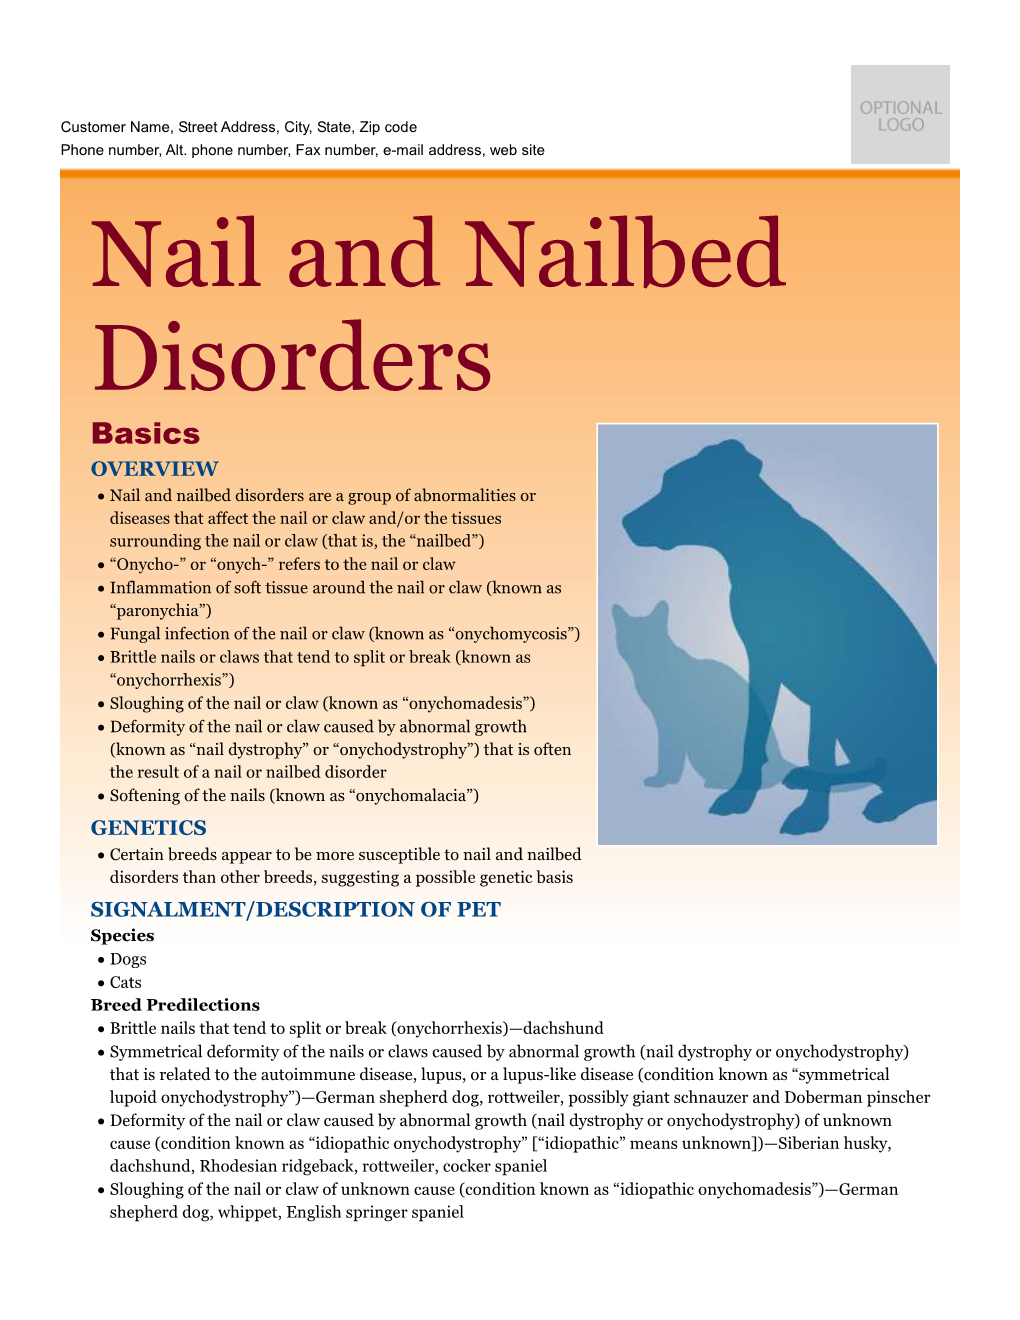 Nail and Nailbed Disorders